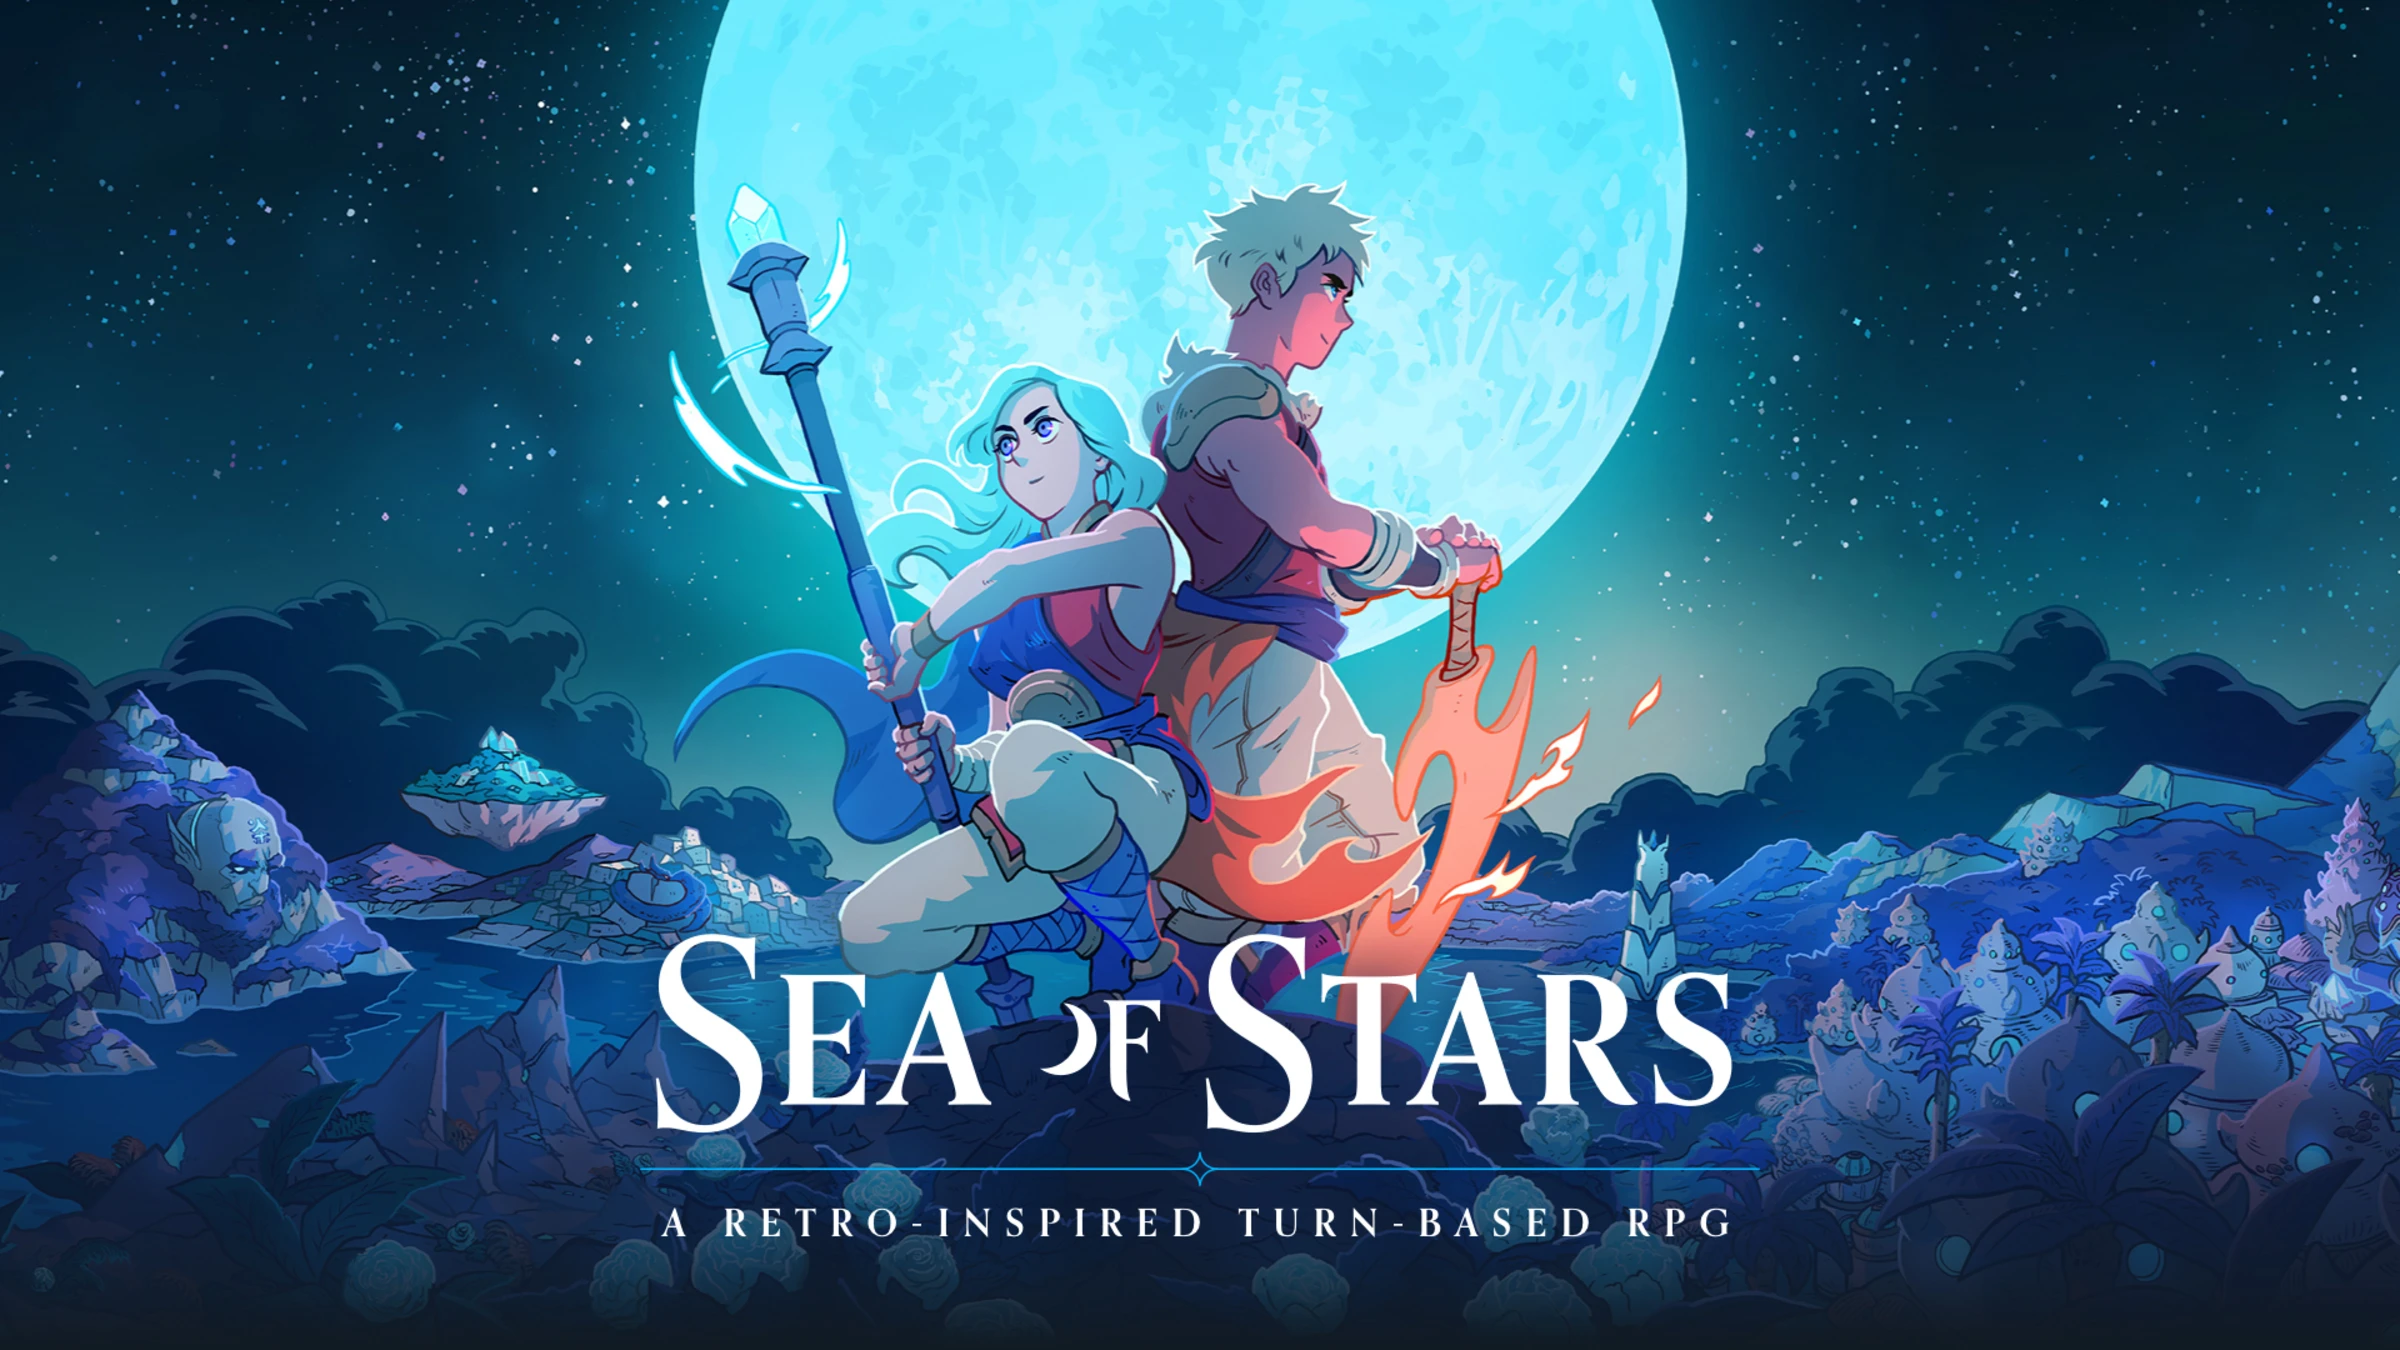 Rollespillet Sea of Stars solgte over 100.000 eksemplarer på første udgivelsesdag